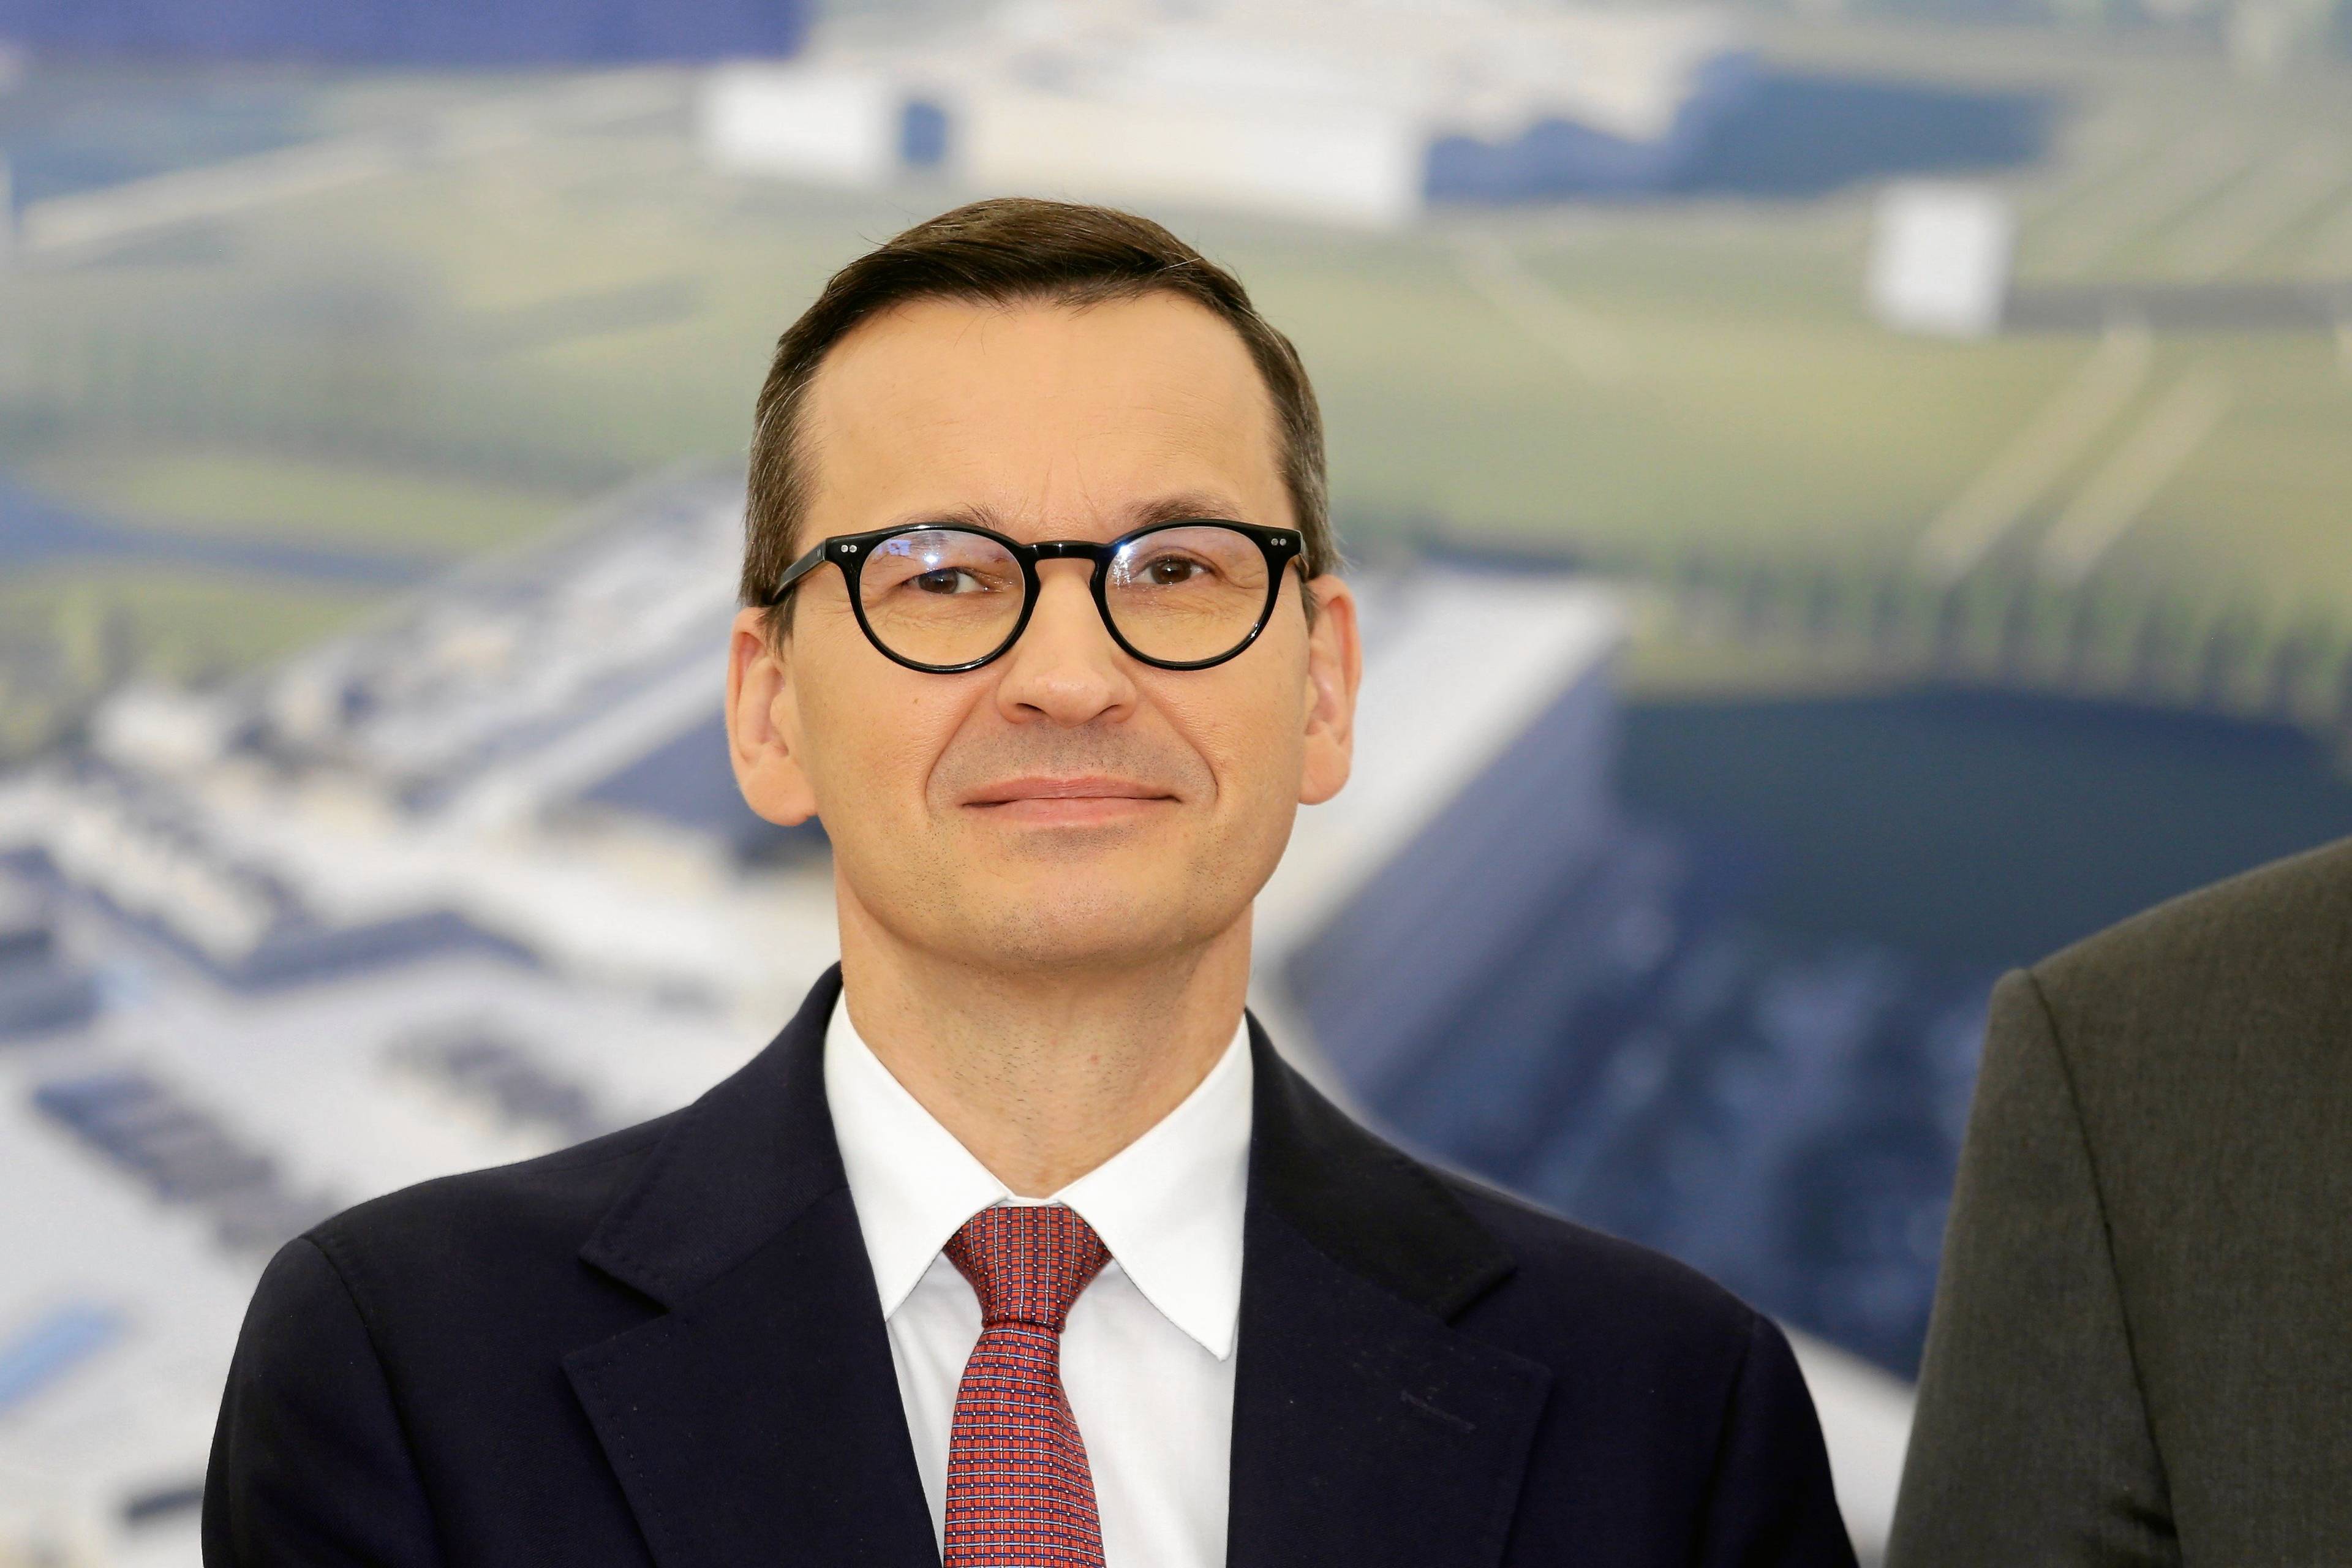 Mężczyzna w okularach i garniturze (premier Mateusz Morawiecki) lekko się uśmiecha, stoli na tle zdjęcia projektu szpitala